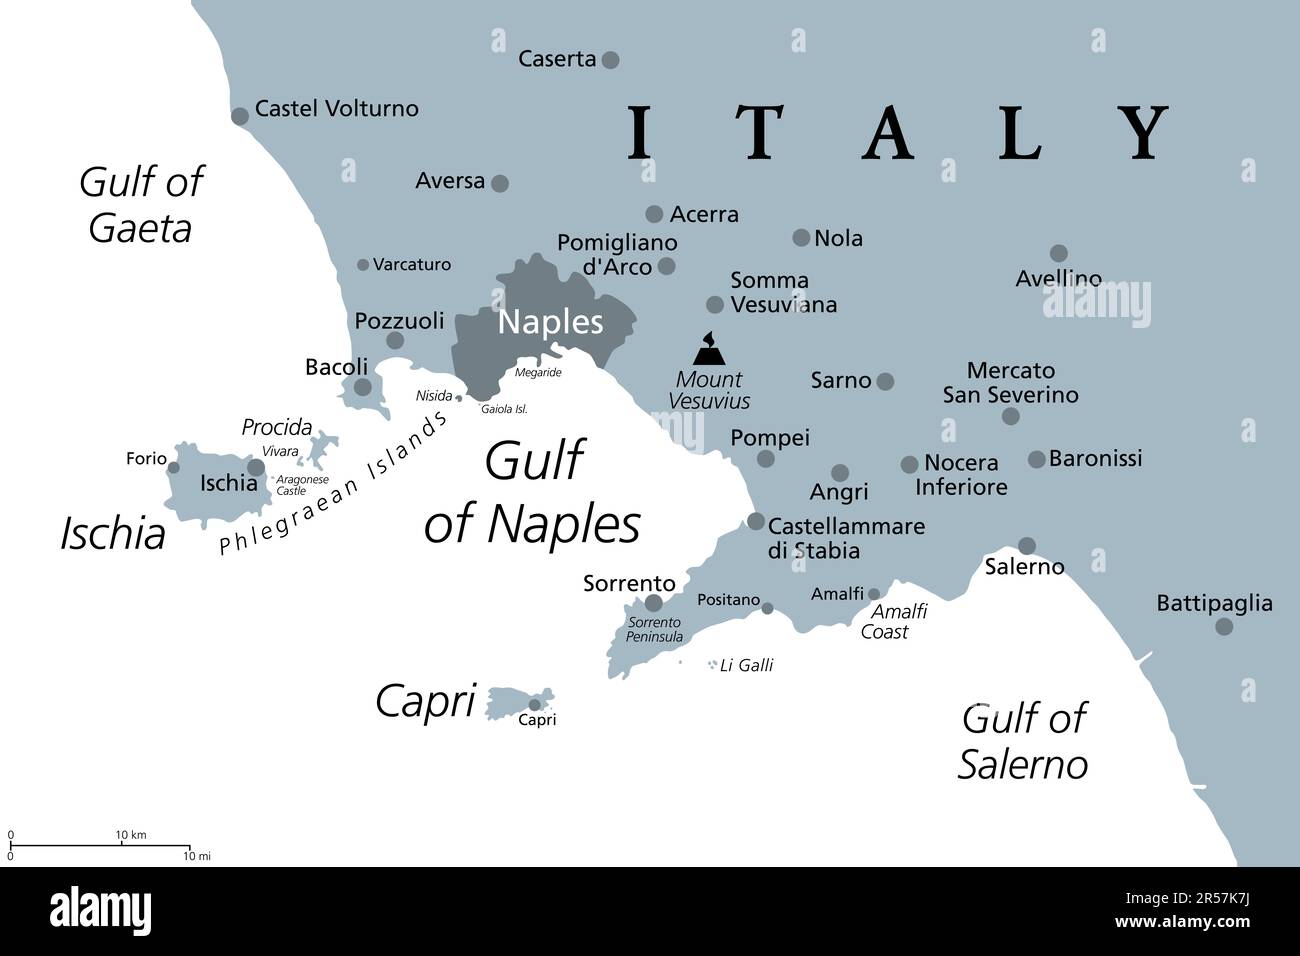 Golfo di Napoli, mappa politica grigia. Baia di Napoli, situata lungo la costa sud-occidentale dell'Italia, si apre sul Mar Tirreno. Foto Stock